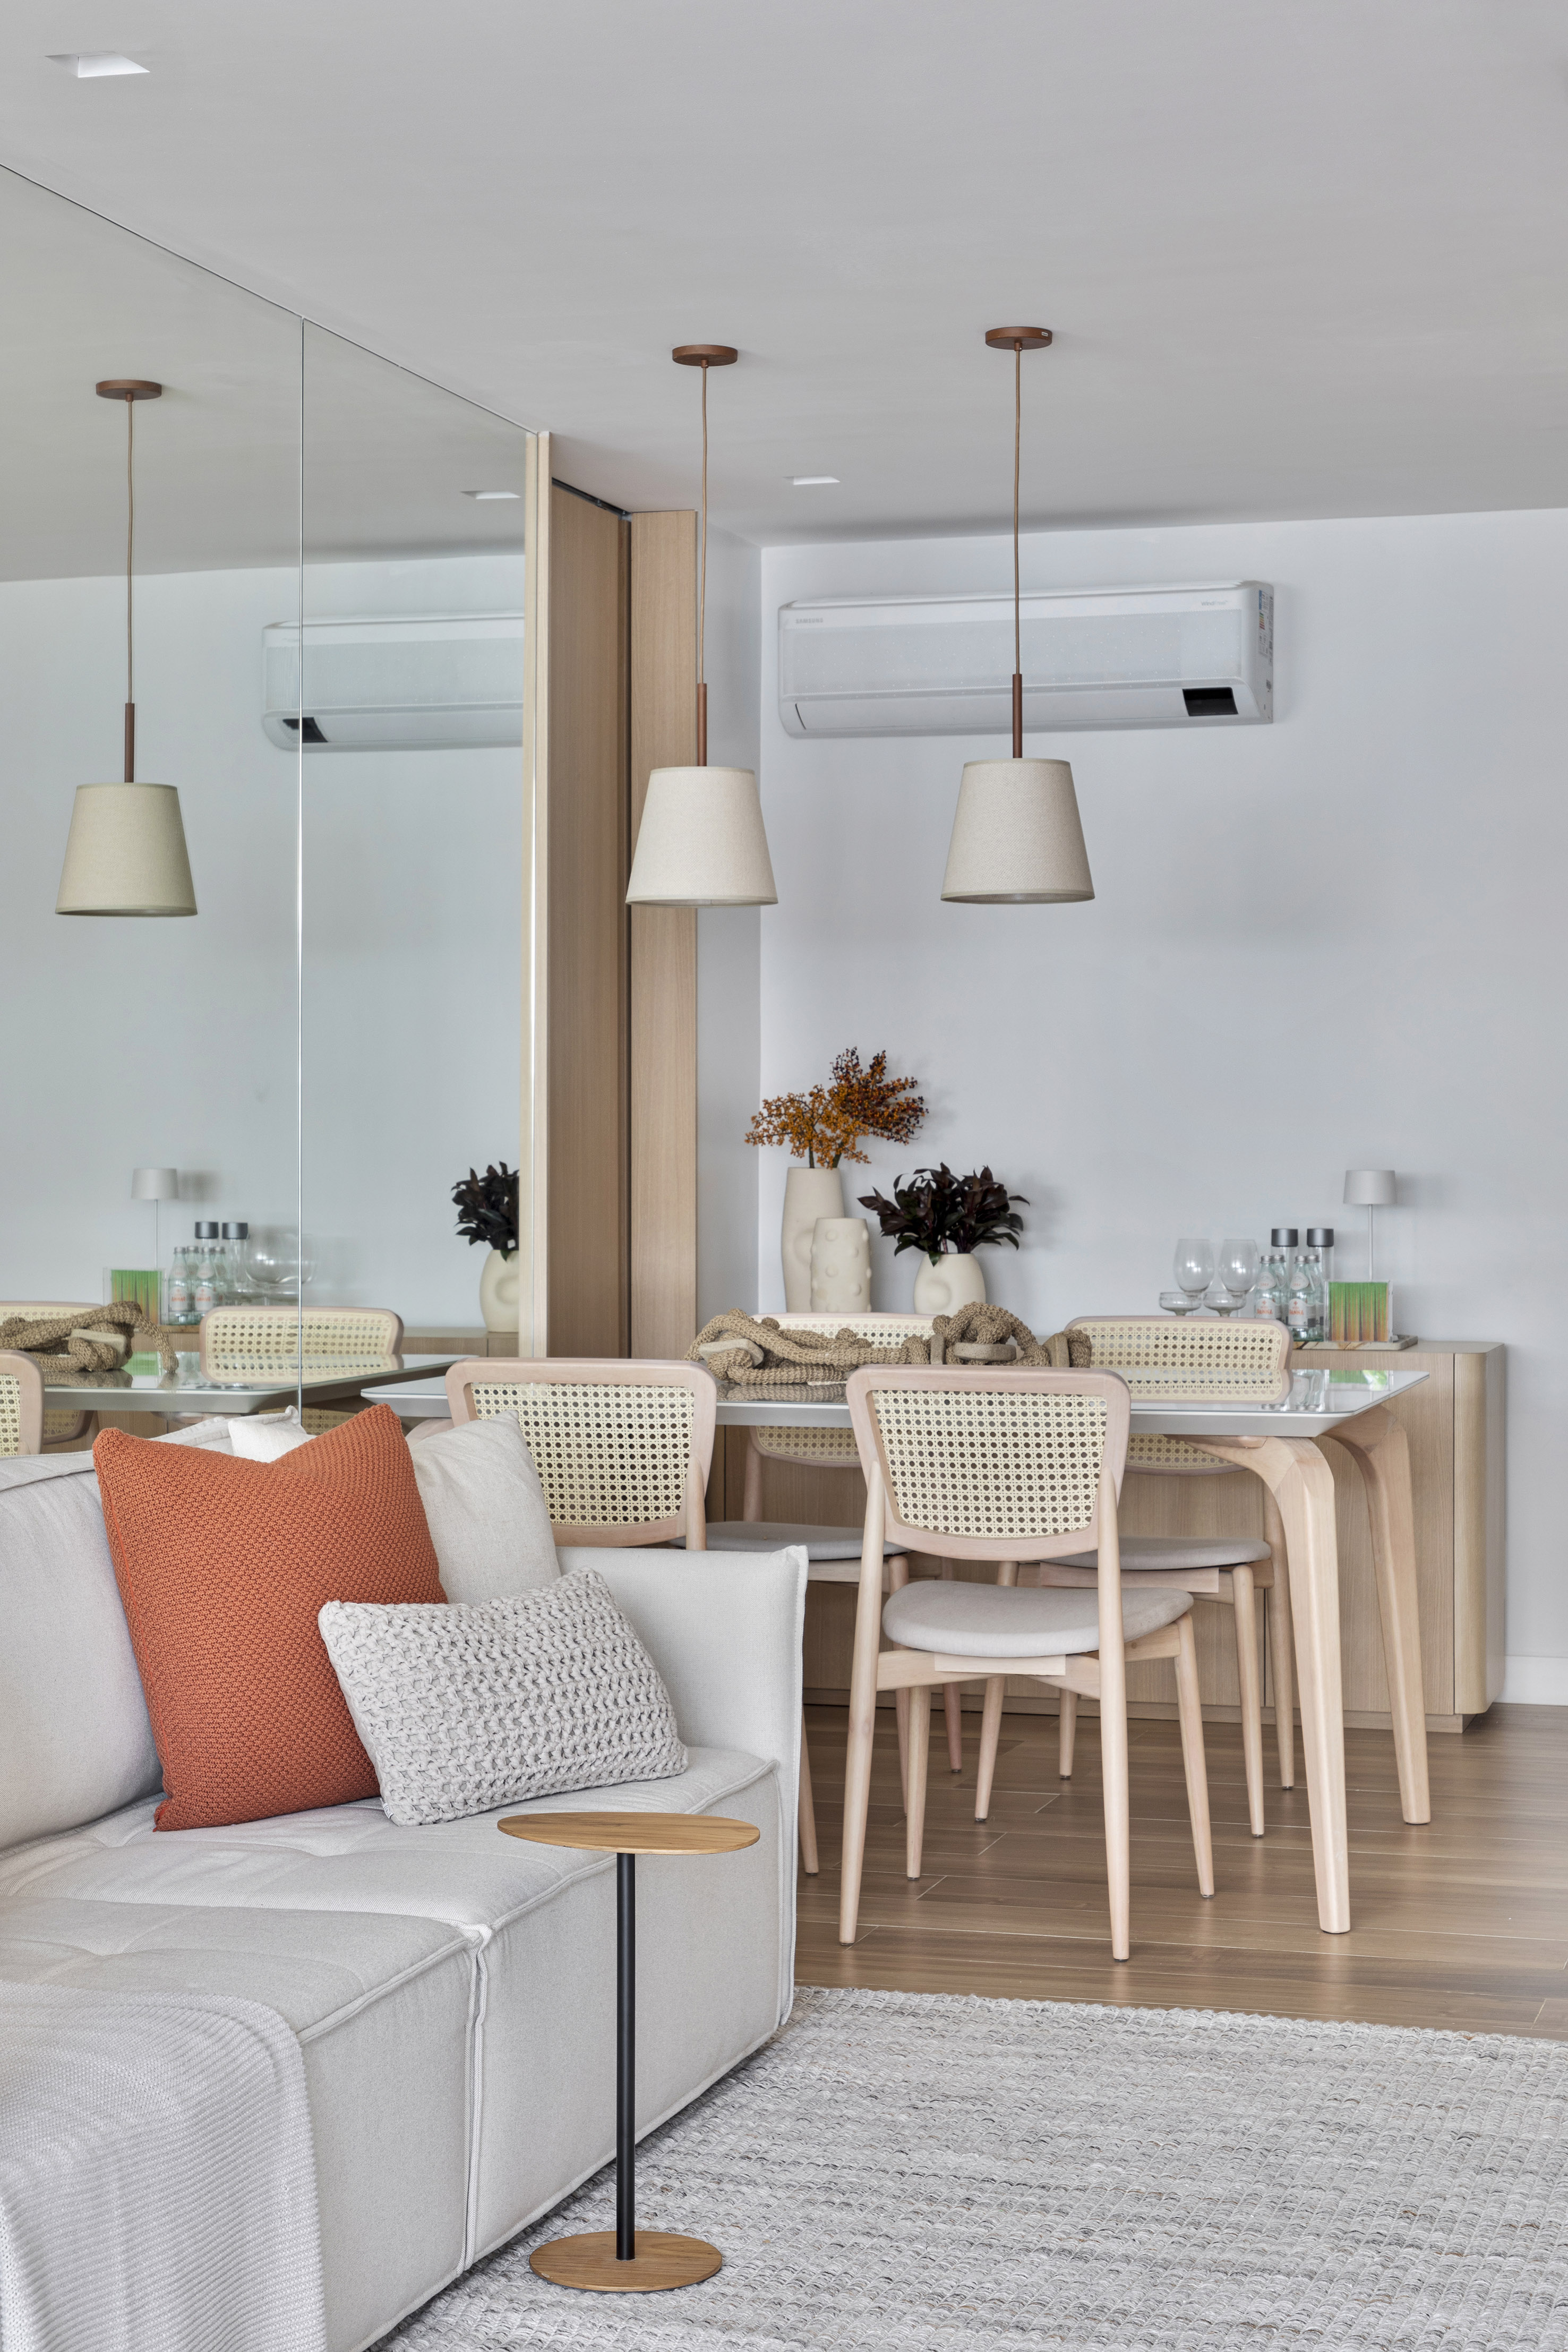 Apartamento de 70 m² parece maior com décor em tons neutros. Projeto de Fabiano Ravaglia. Na foto, sala de jantar com parede espelhada.